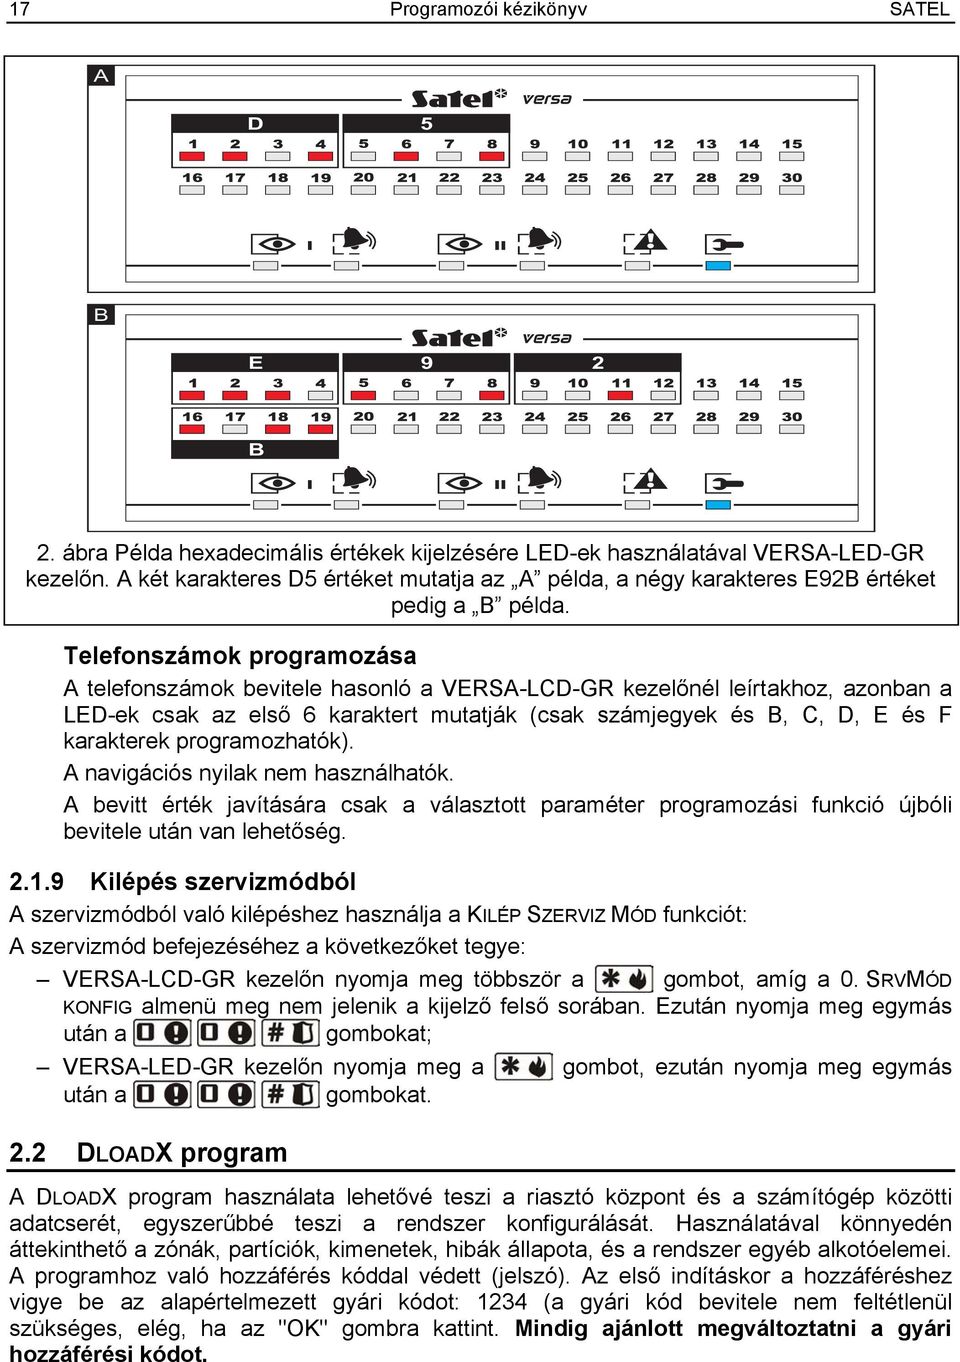 Telefonszámok programozása A telefonszámok bevitele hasonló a VERSA-LCD-GR kezelőnél leírtakhoz, azonban a LED-ek csak az első 6 karaktert mutatják (csak számjegyek és B, C, D, E és F karakterek